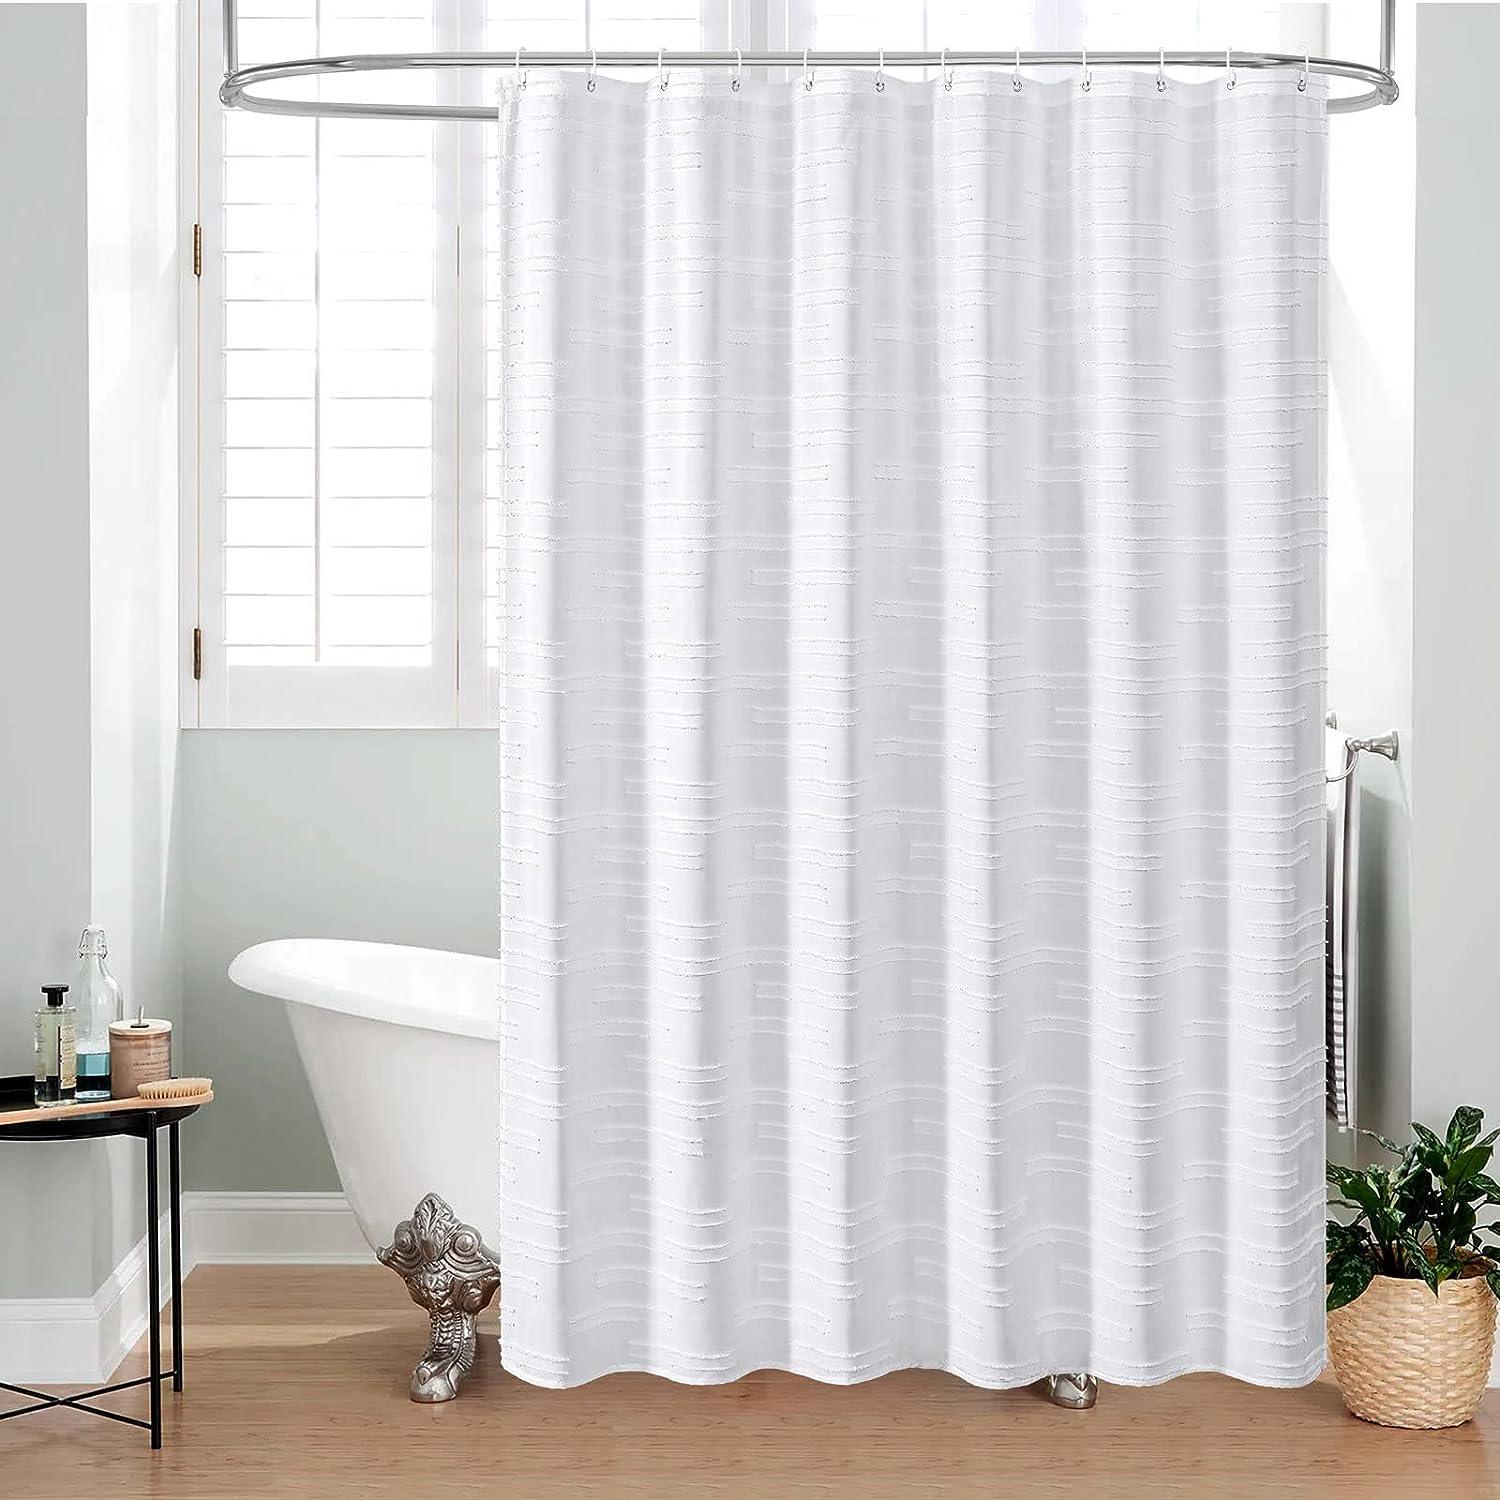 Juego de cortinas de ducha de tela bohemia blanca cortinas de ducha mo -  VIRTUAL MUEBLES